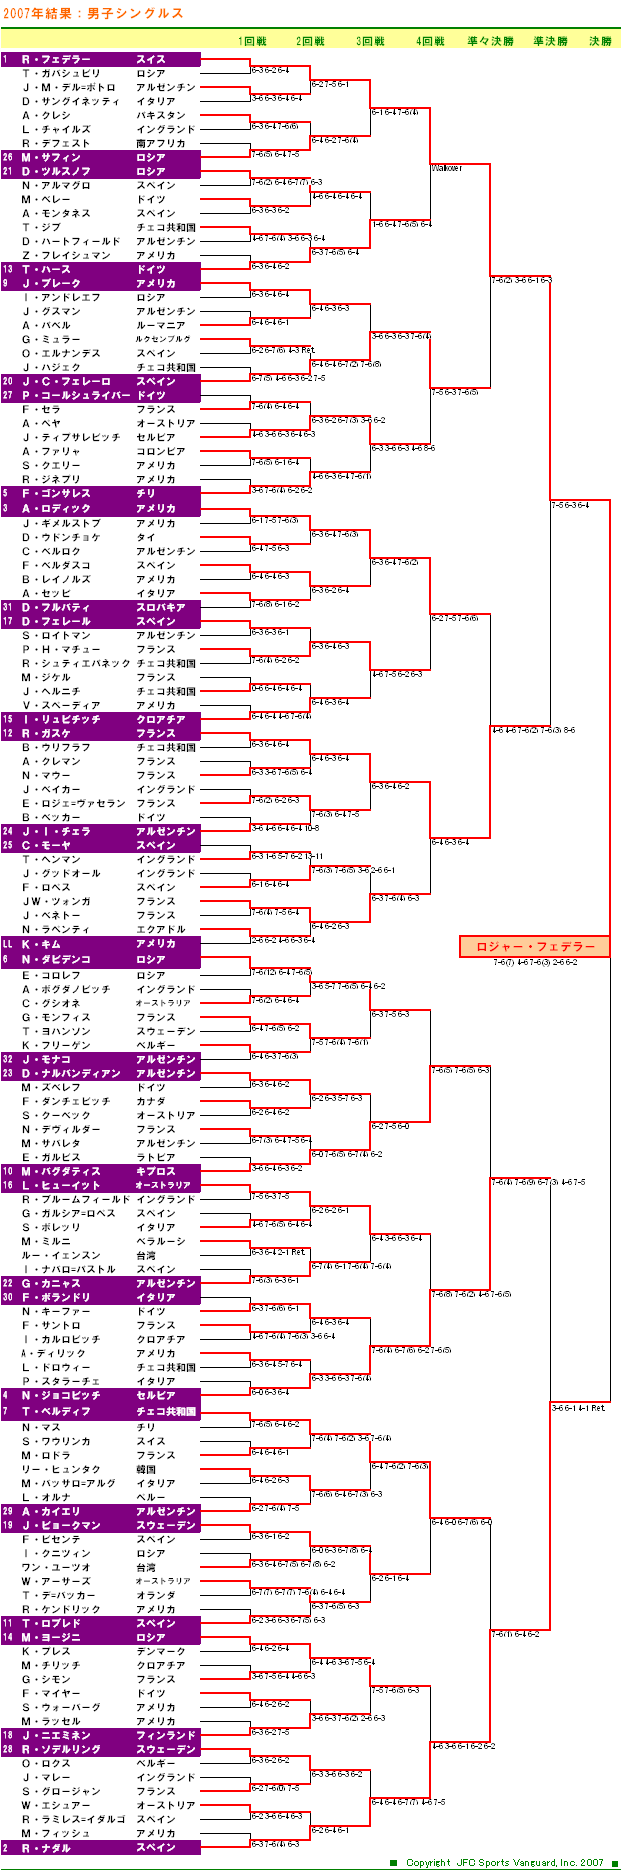 ウィンブルドンテニス2007　男子シングルスドロー表